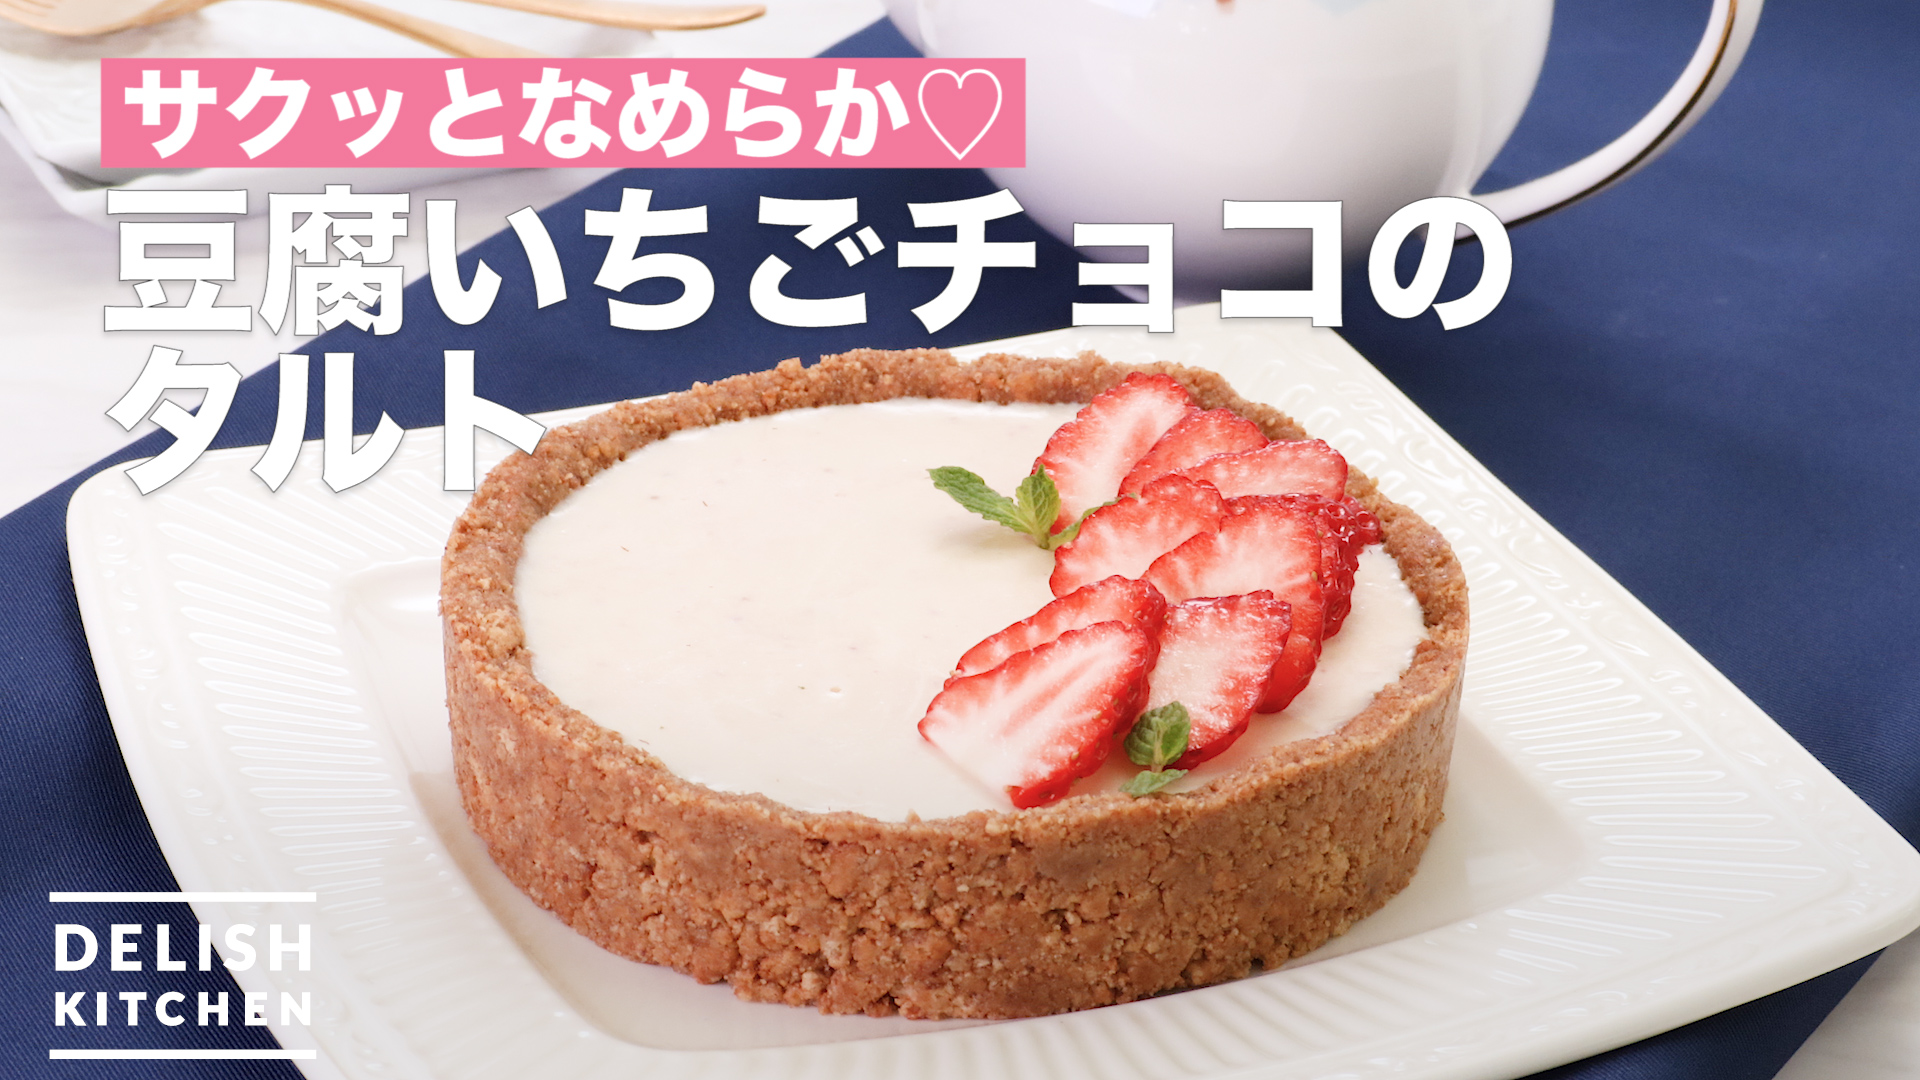 サクッとなめらか 豆腐いちごチョコのタルト How To Make Tofu Strawberry Chocolate Tart Delish Kitchen デリッシュキッチン Yahoo Japan